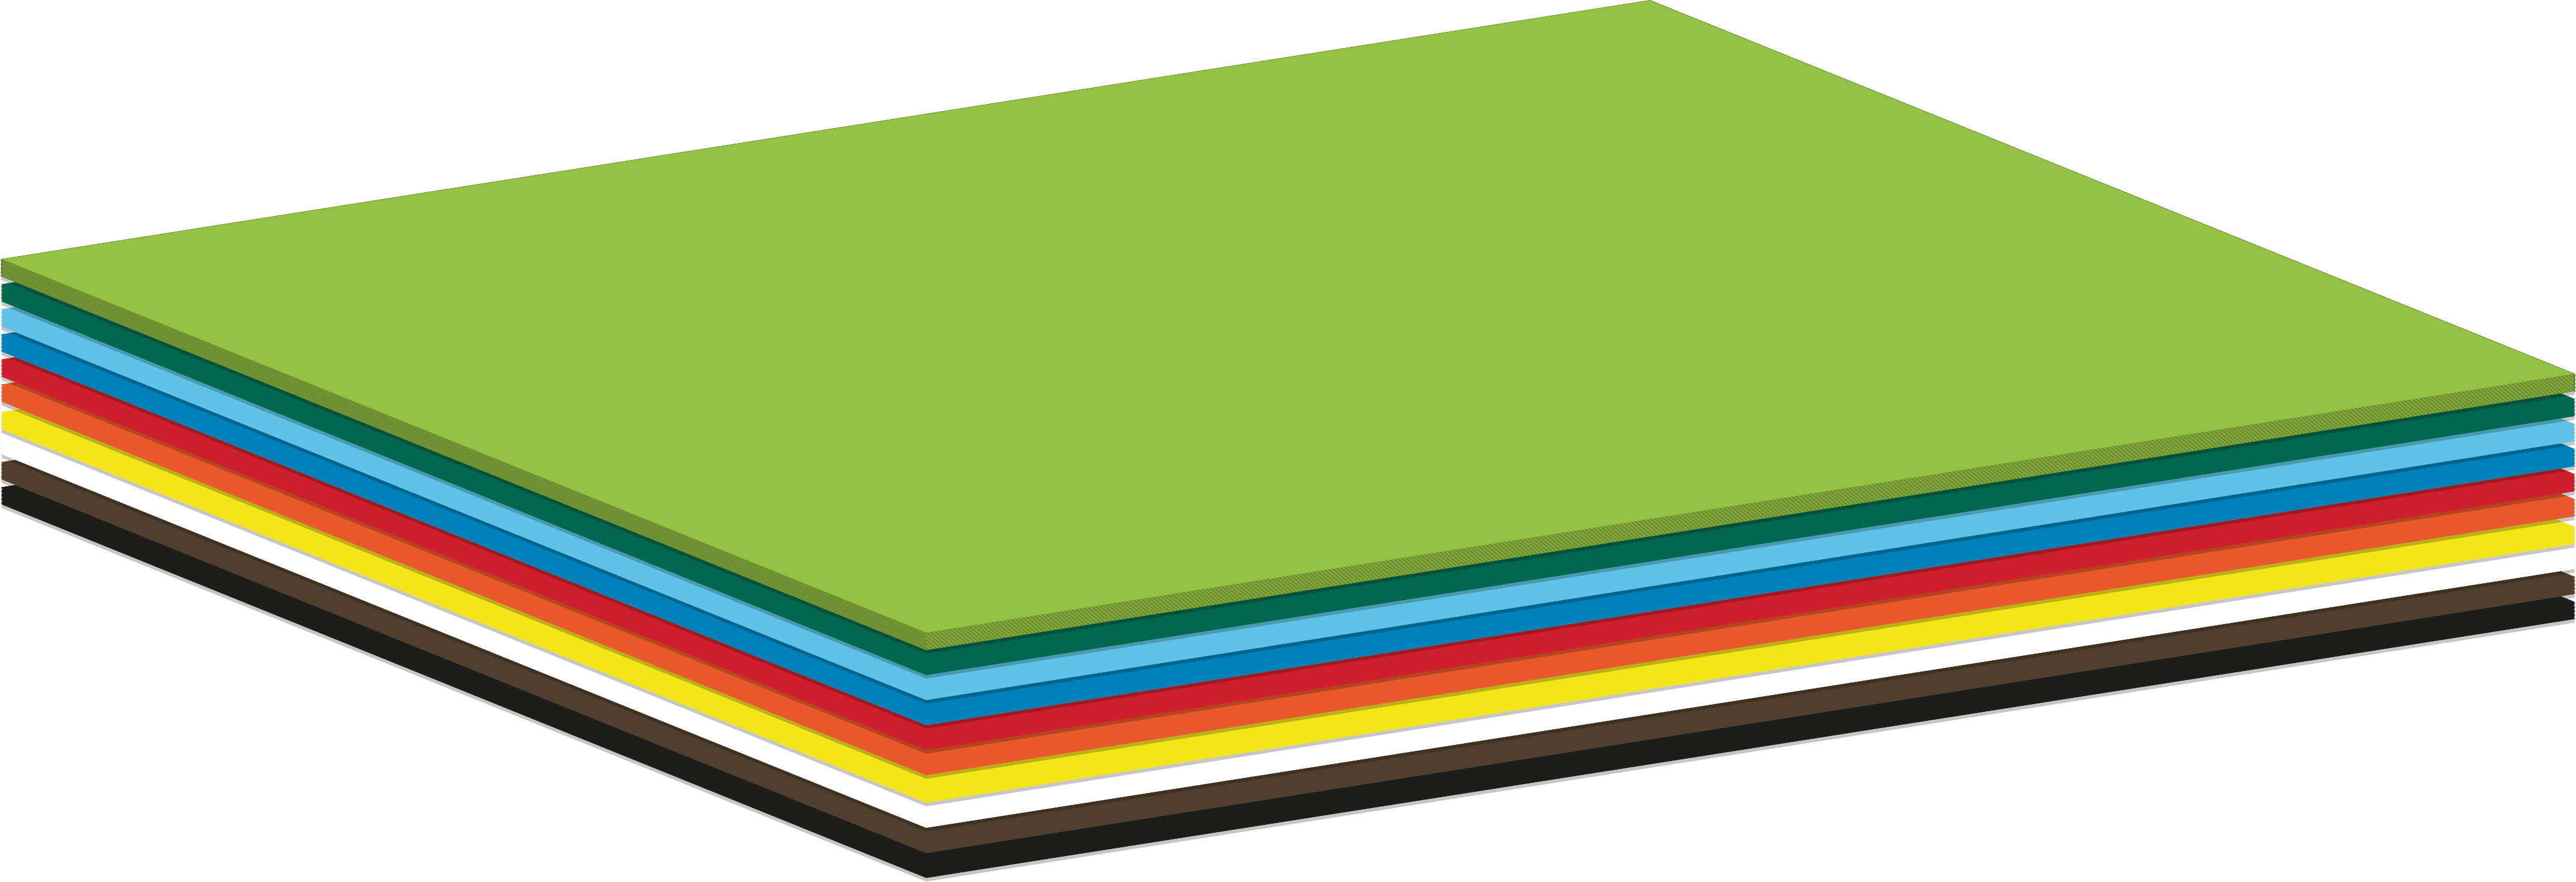 Basteln und Dekorieren ideal für Einladungen Visitenkarten 10 Blatt Gelb 220g Tonkarton einseitig strukturiert DIN A4 210x297 mm Prisma Cedro Diplome zum Zeichnen 